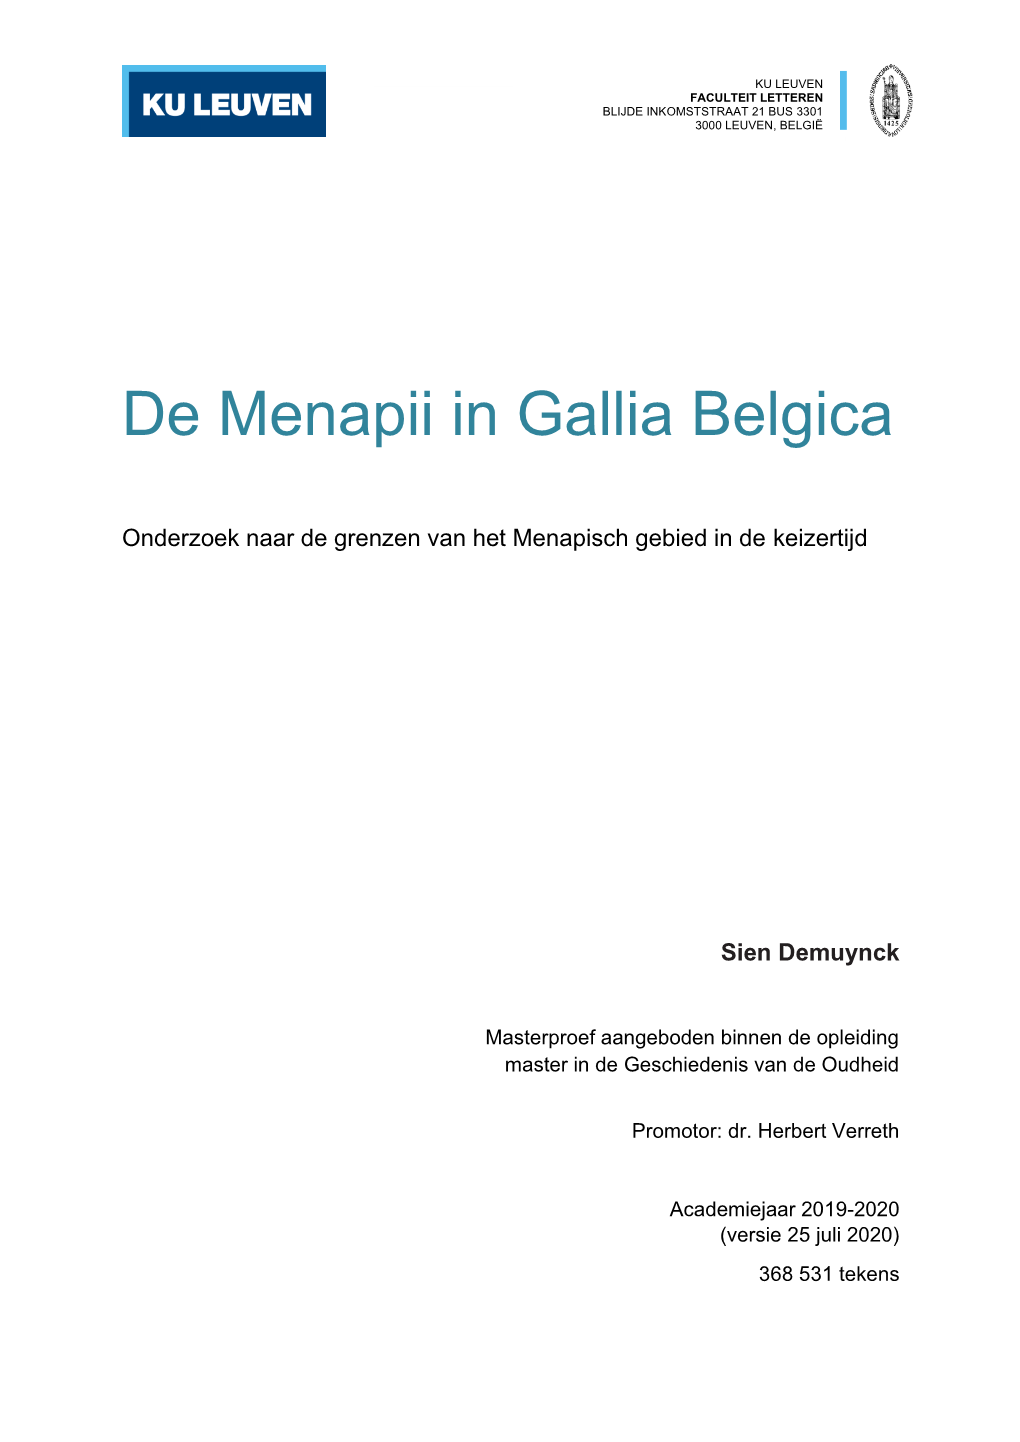 De Menapii in Gallia Belgica